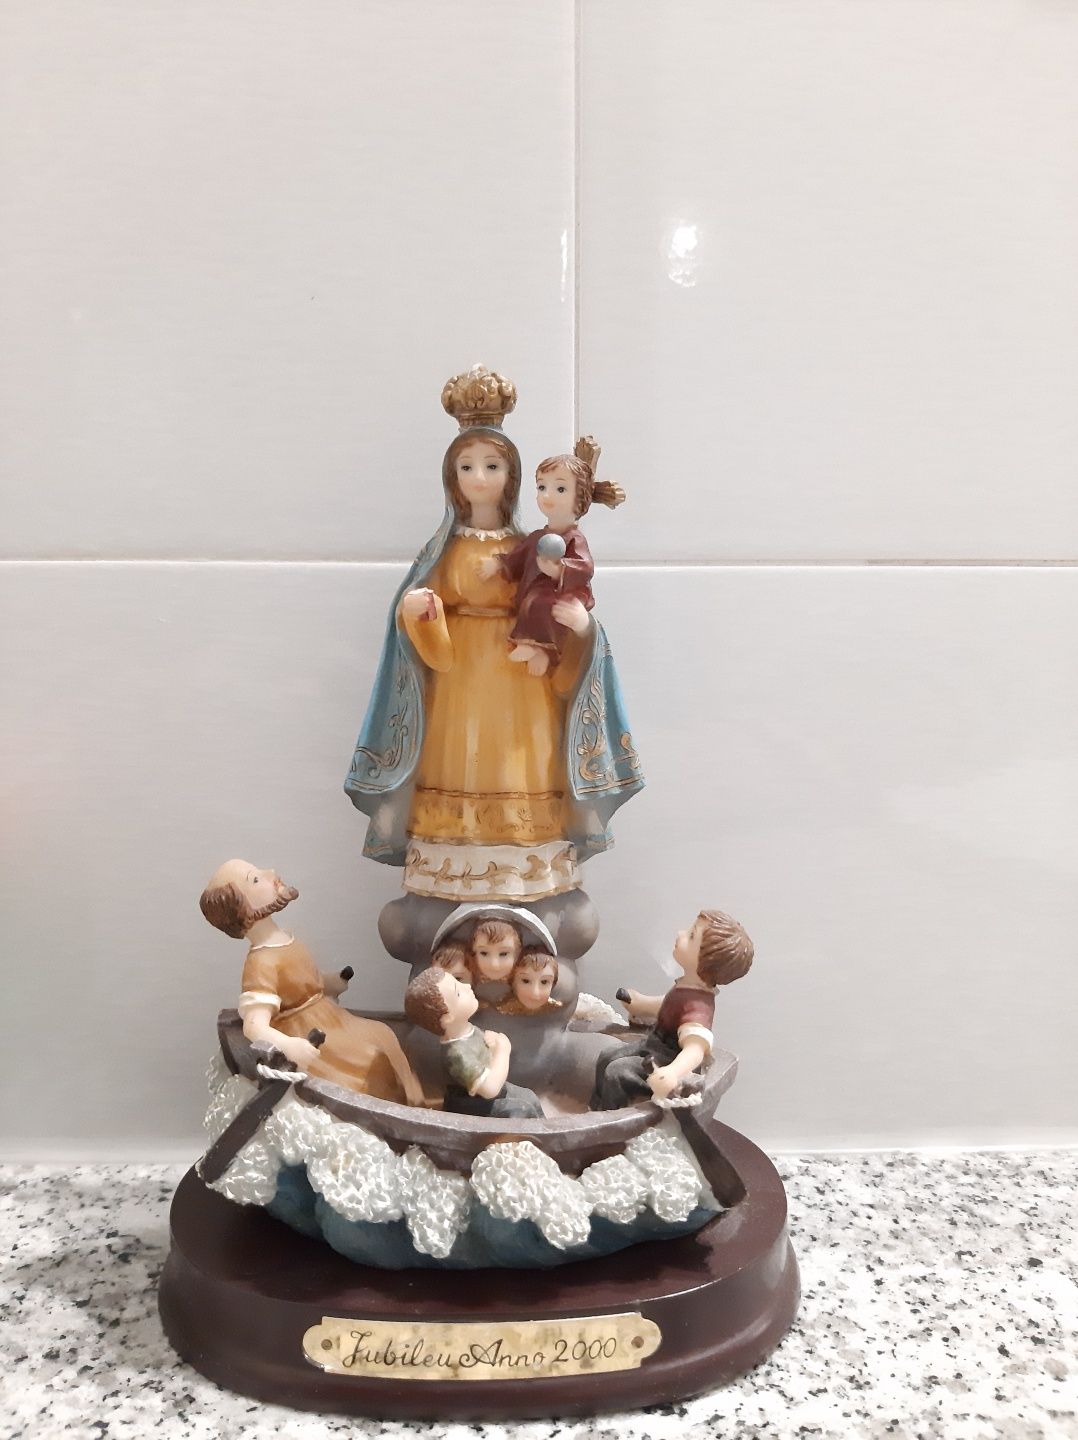 Arte sacra - Nossa Senhora dos Navegantes